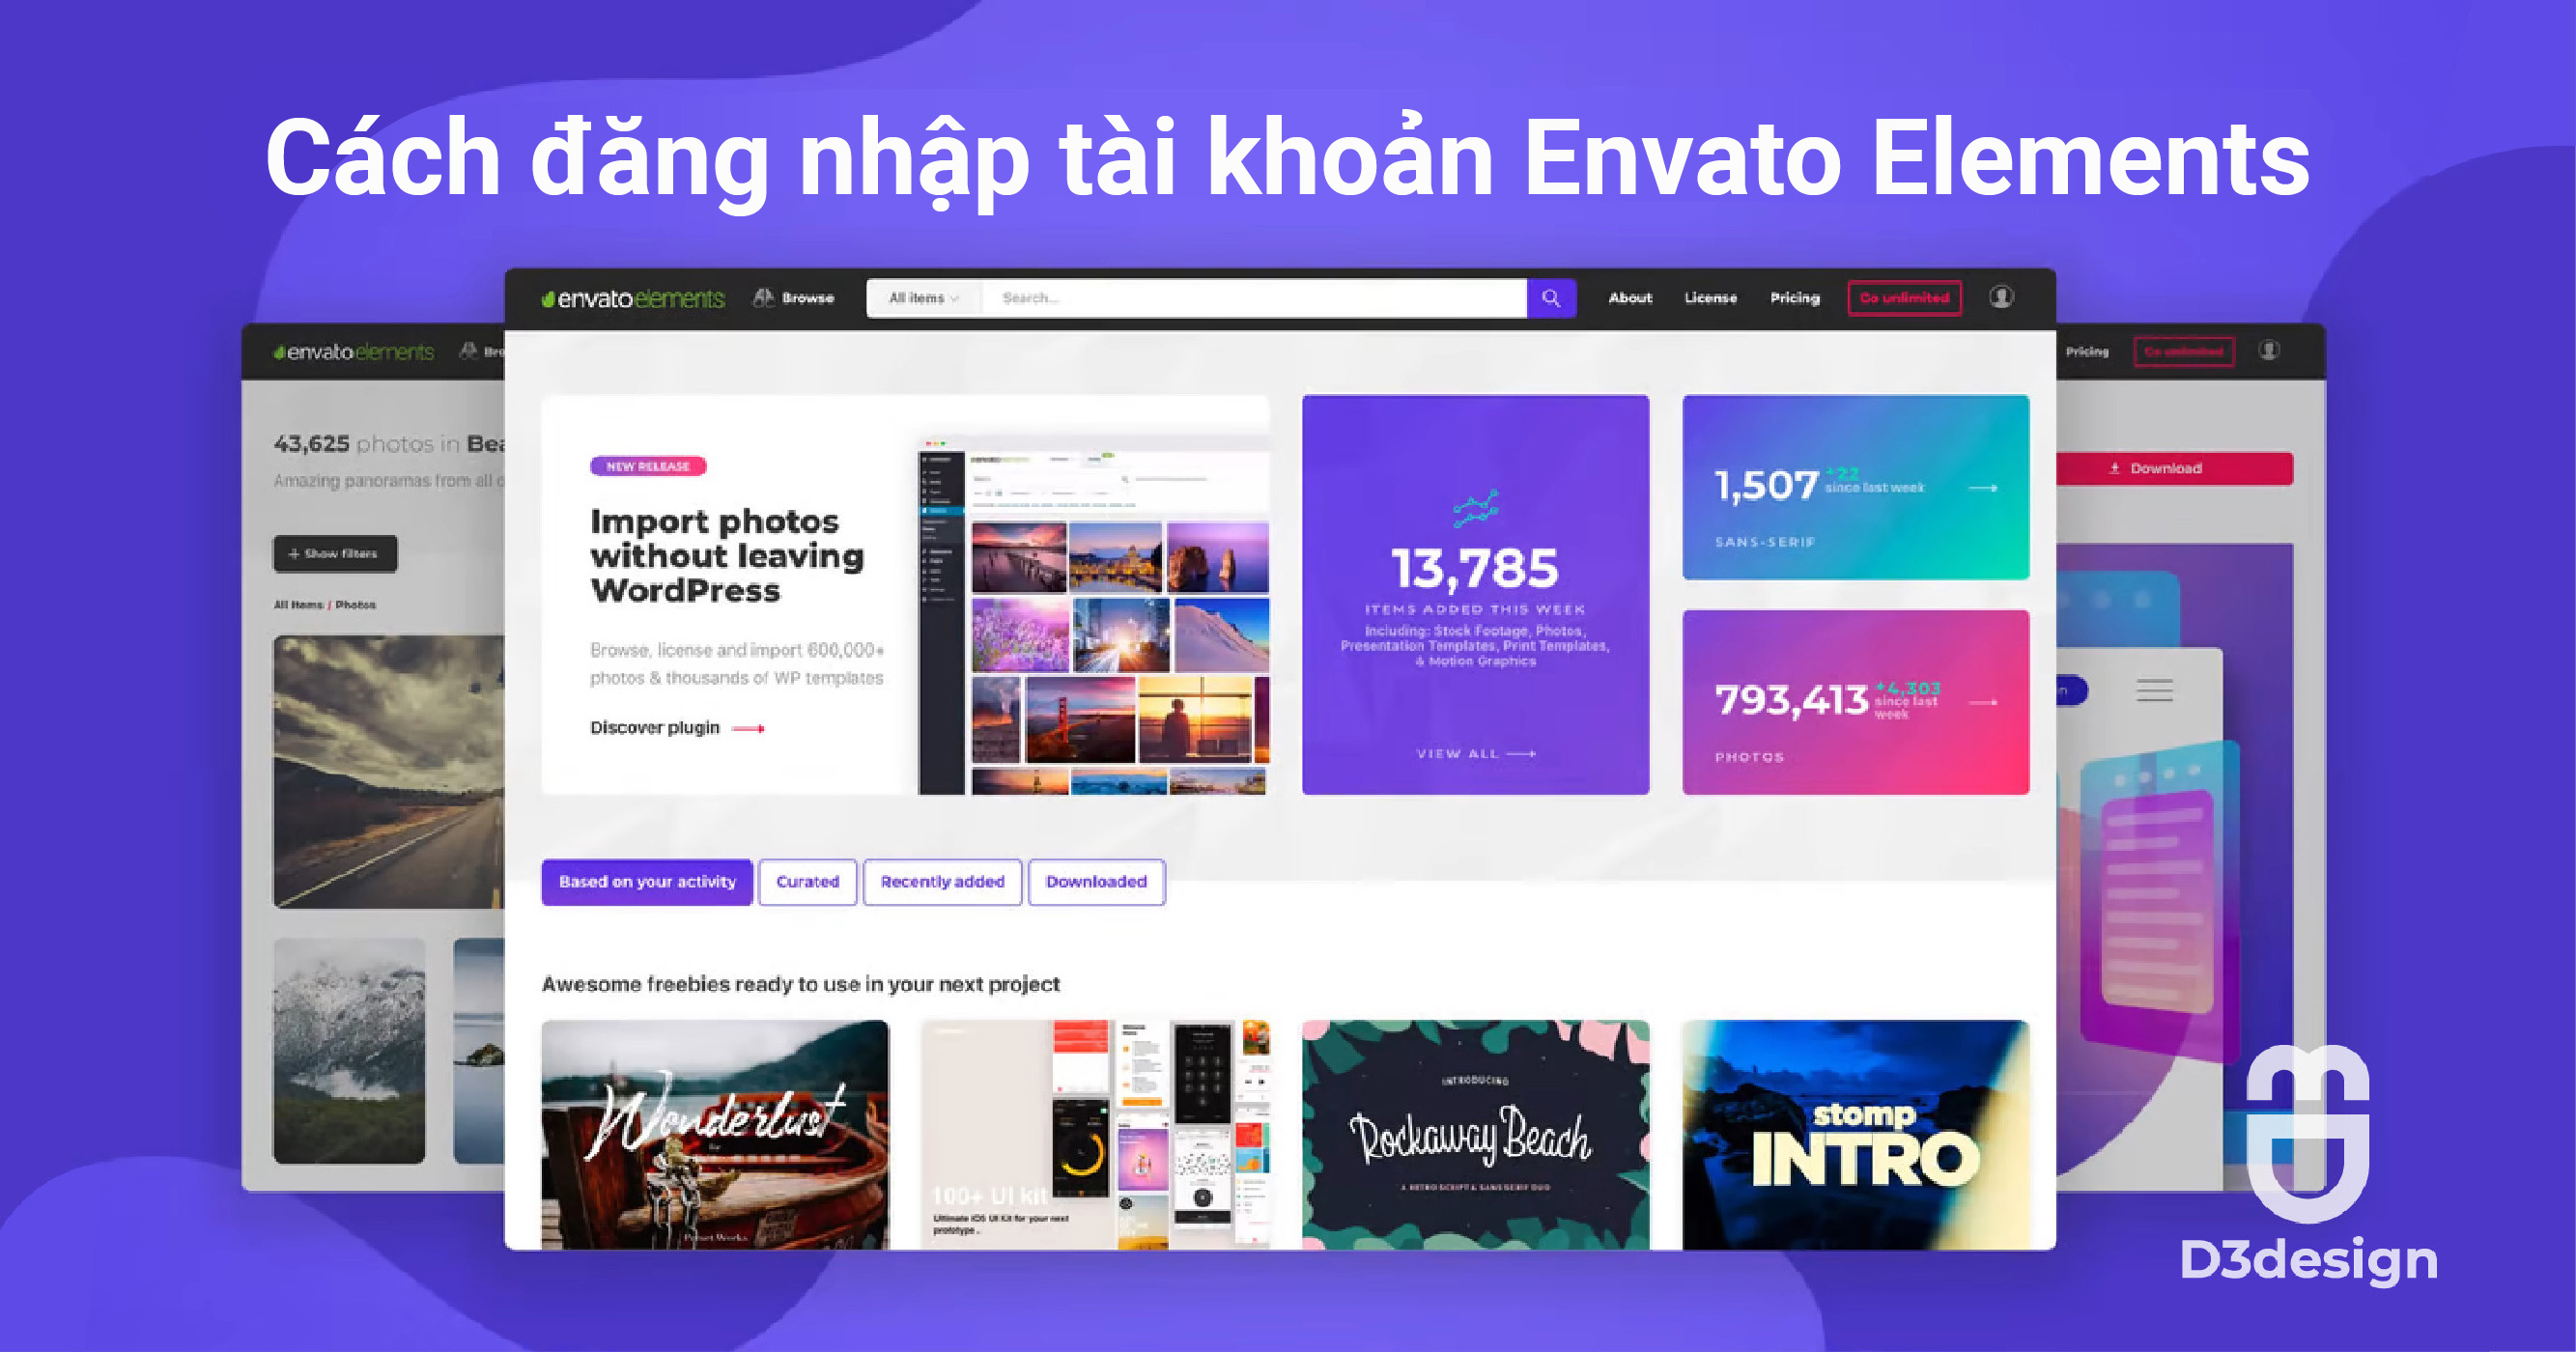 Cách đăng nhập tài khoản Envato Elements - D3design